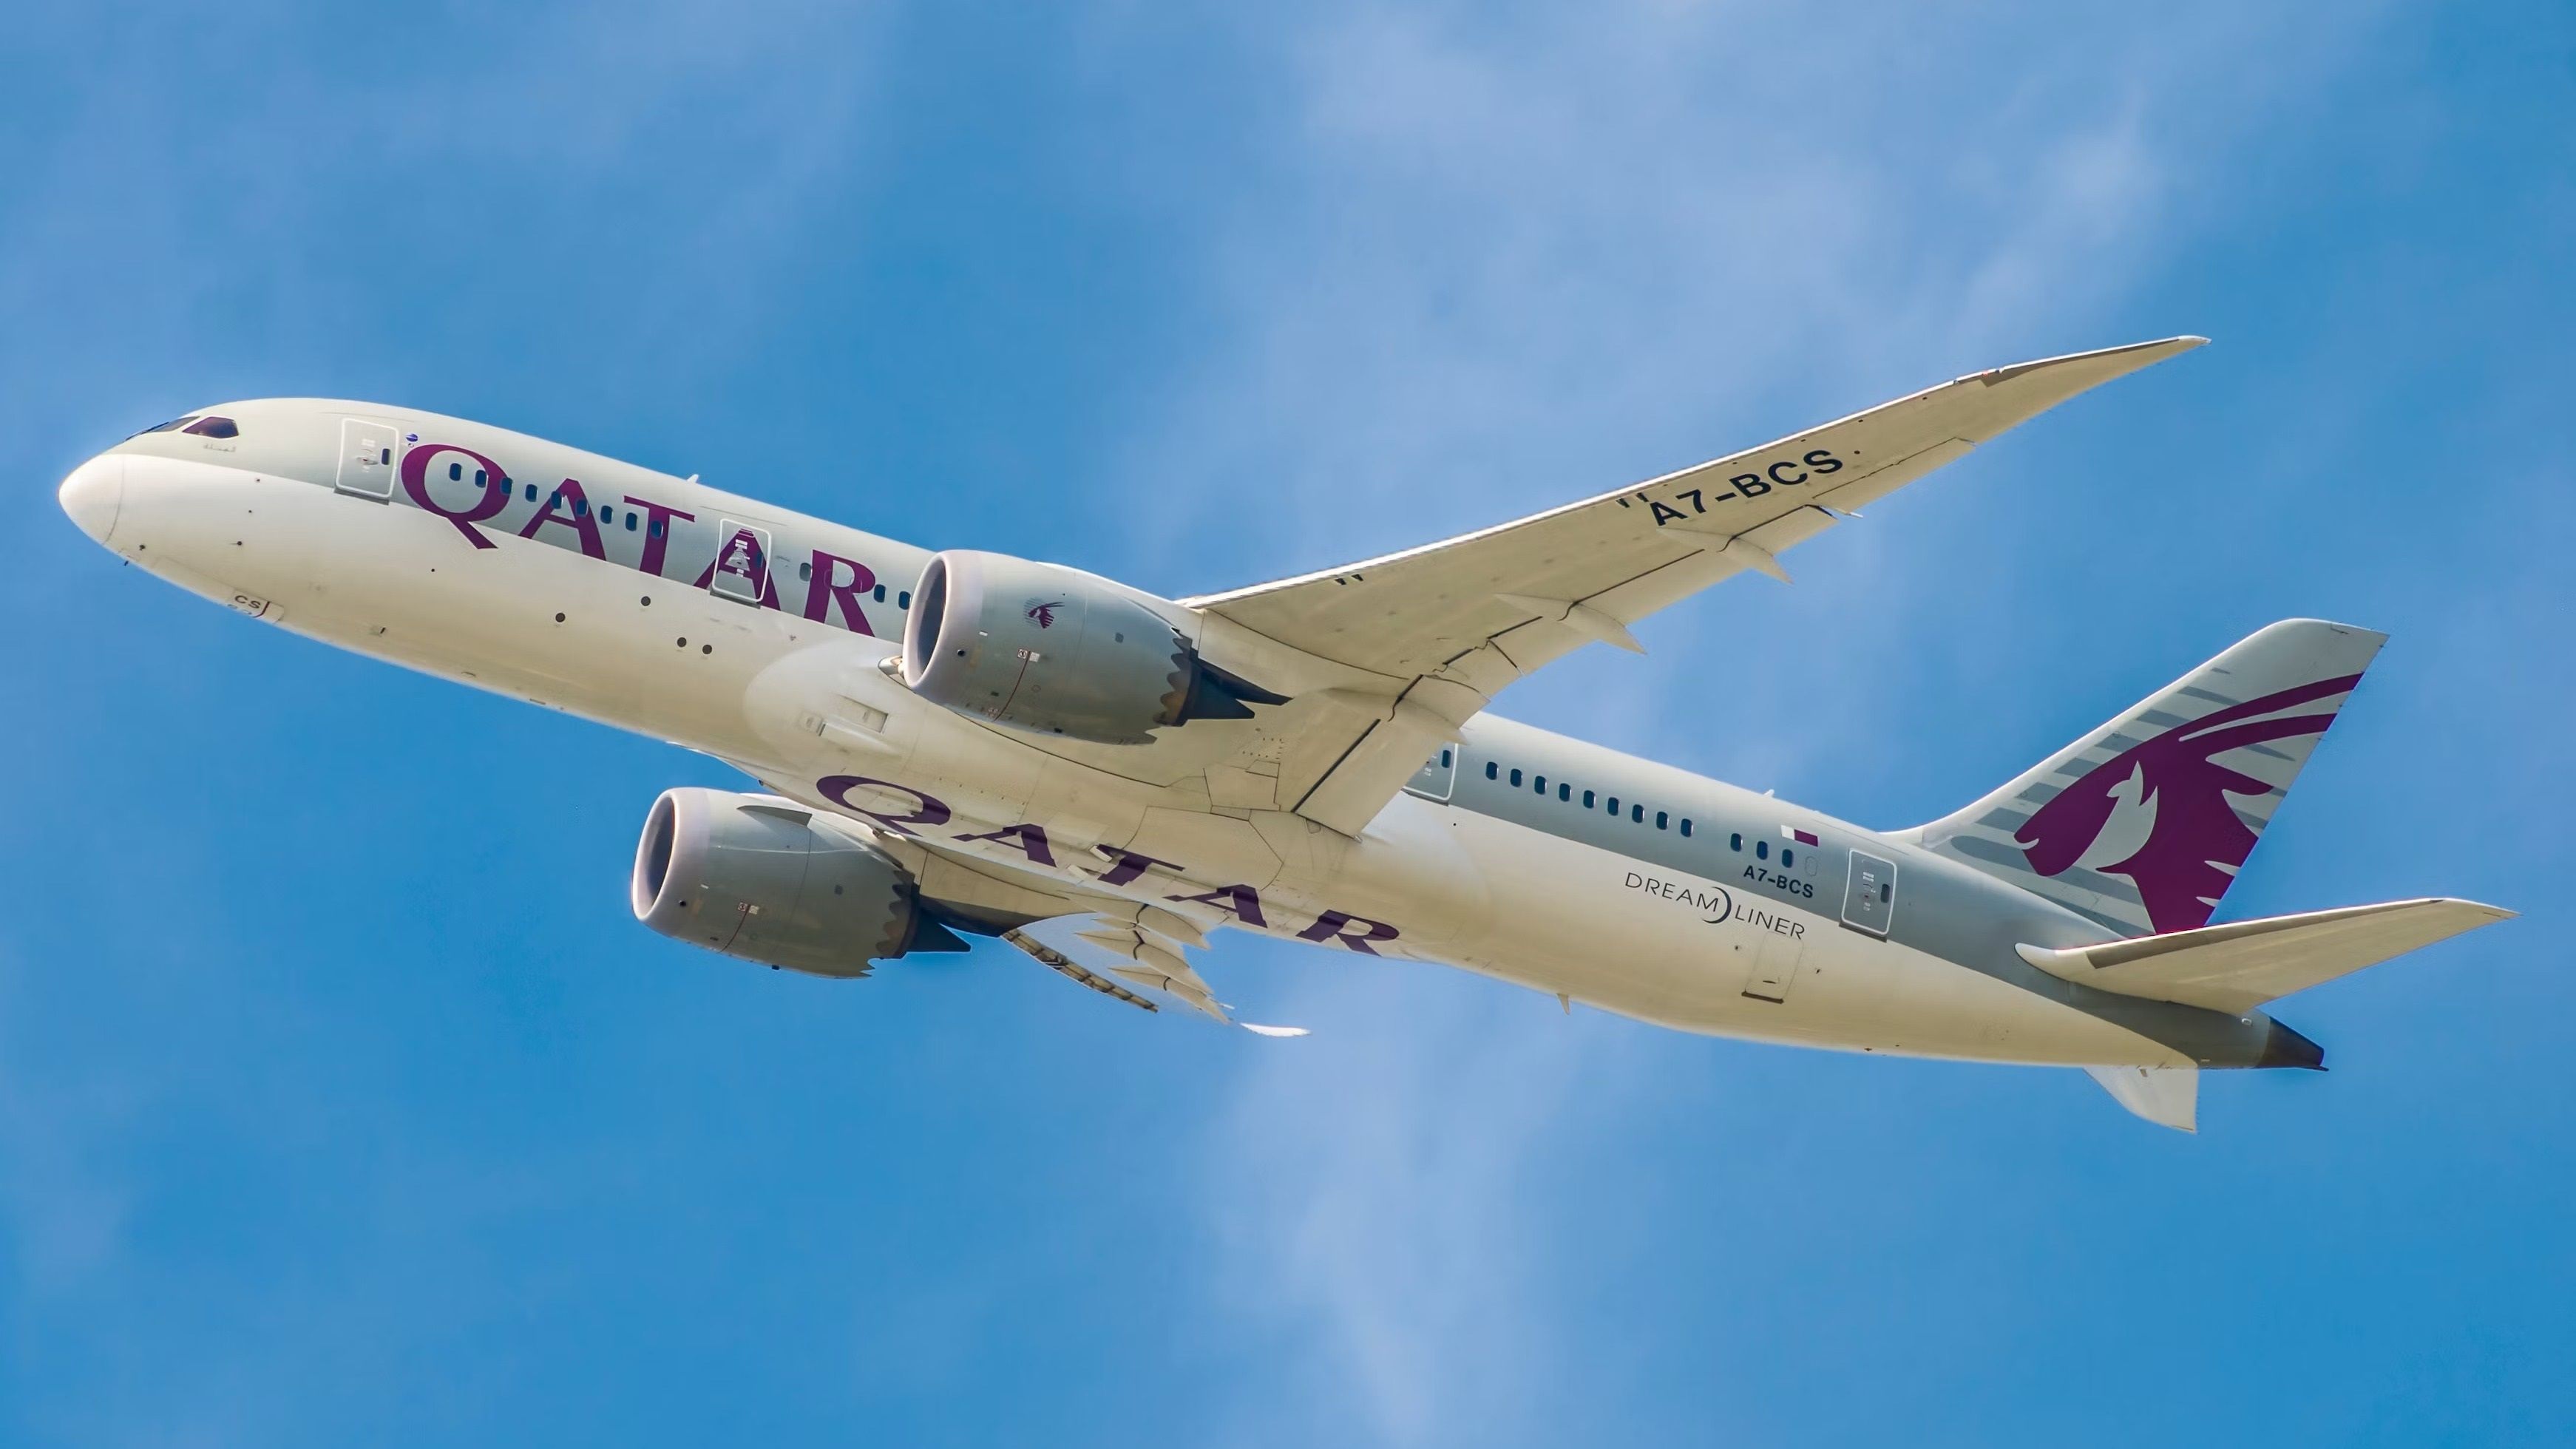 Qatar Airways Boeing 787-8 taking off